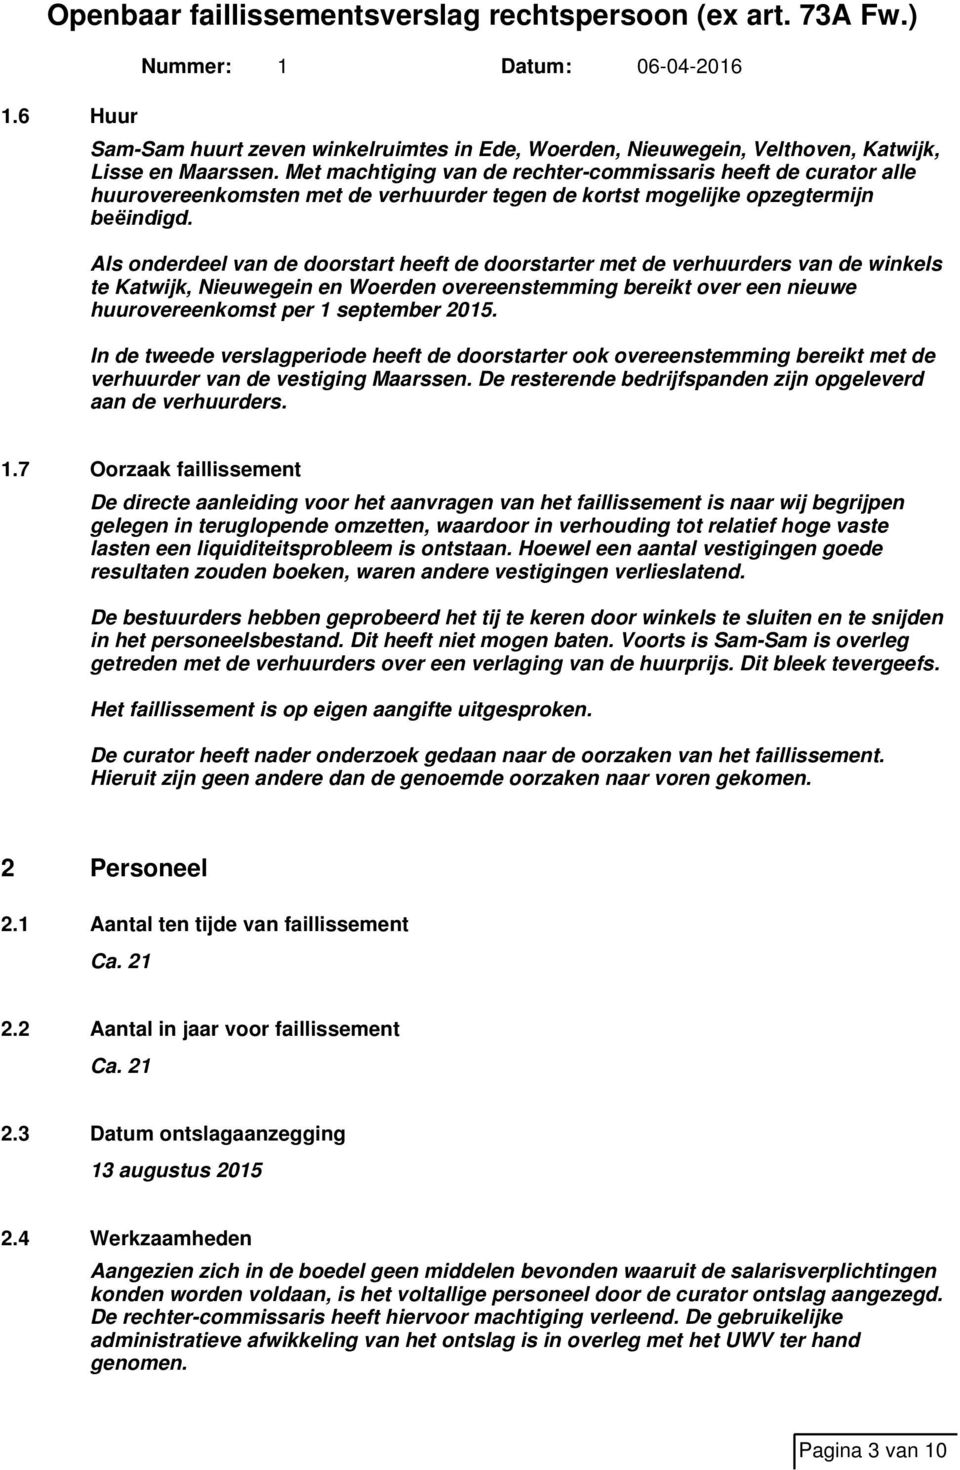 Als onderdeel van de doorstart heeft de doorstarter met de verhuurders van de winkels te Katwijk, Nieuwegein en Woerden overeenstemming bereikt over een nieuwe huurovereenkomst per 1 september 2015.